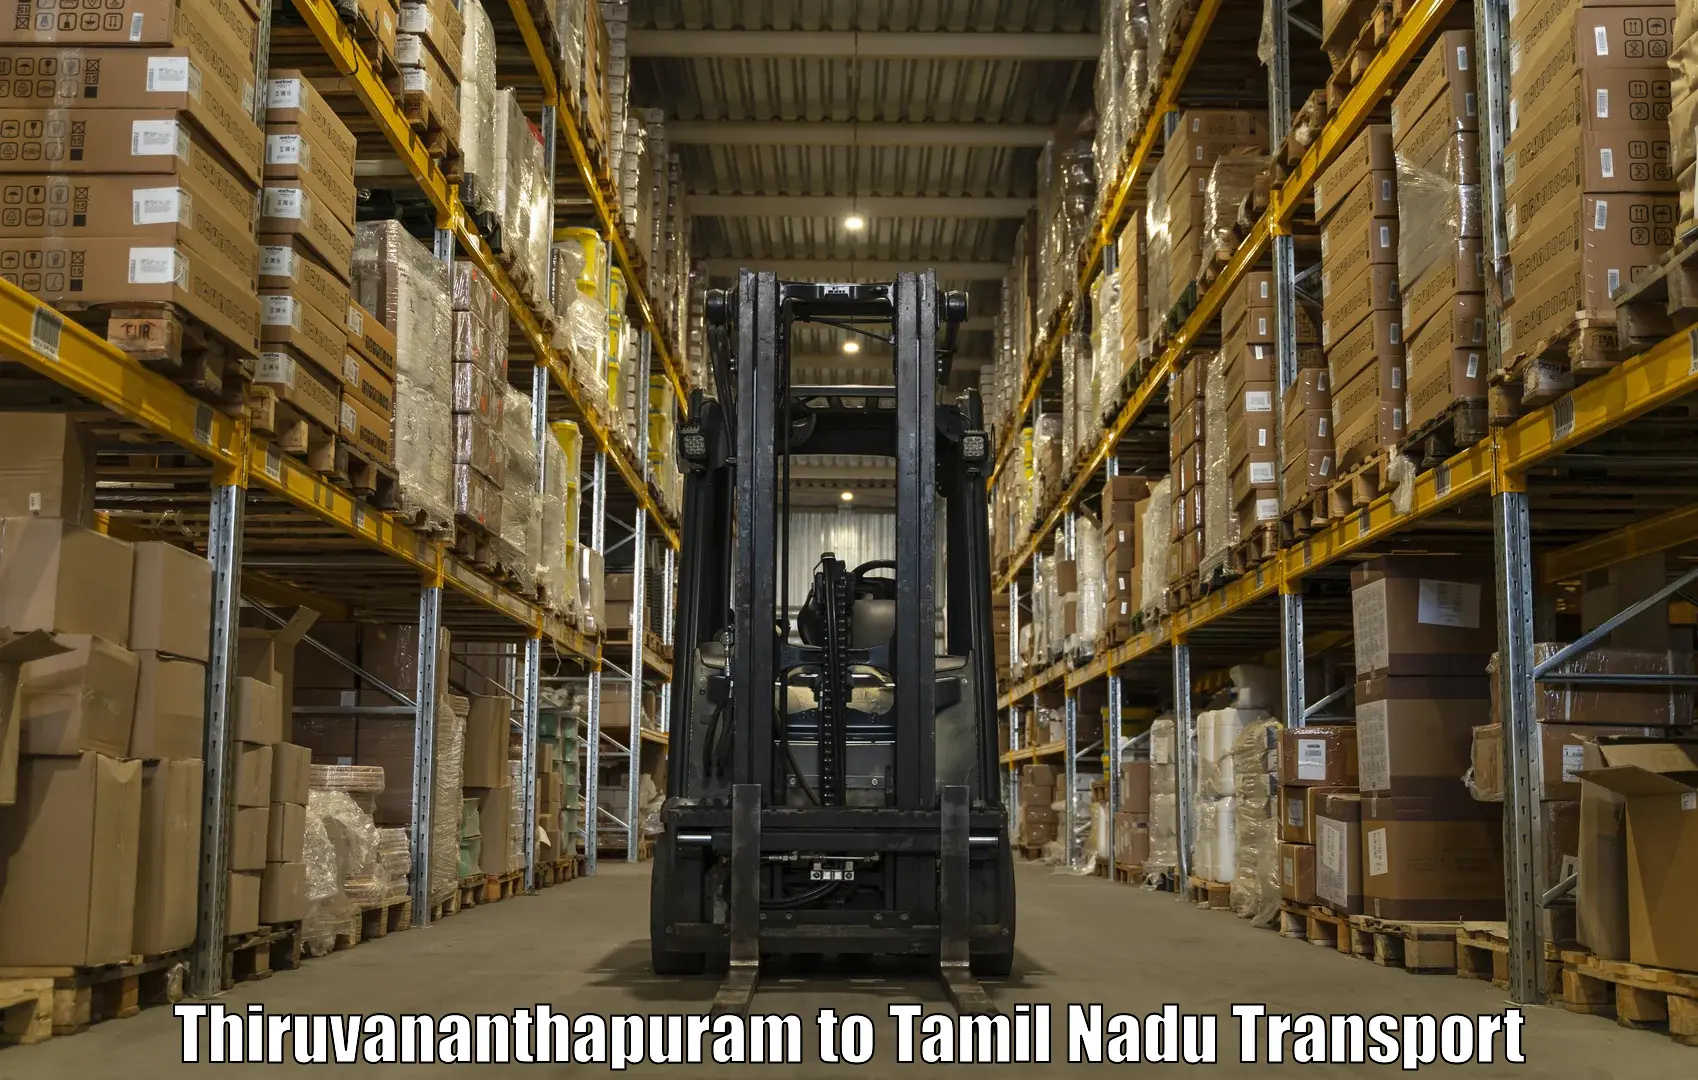 Air freight transport services Thiruvananthapuram to Cheyyar